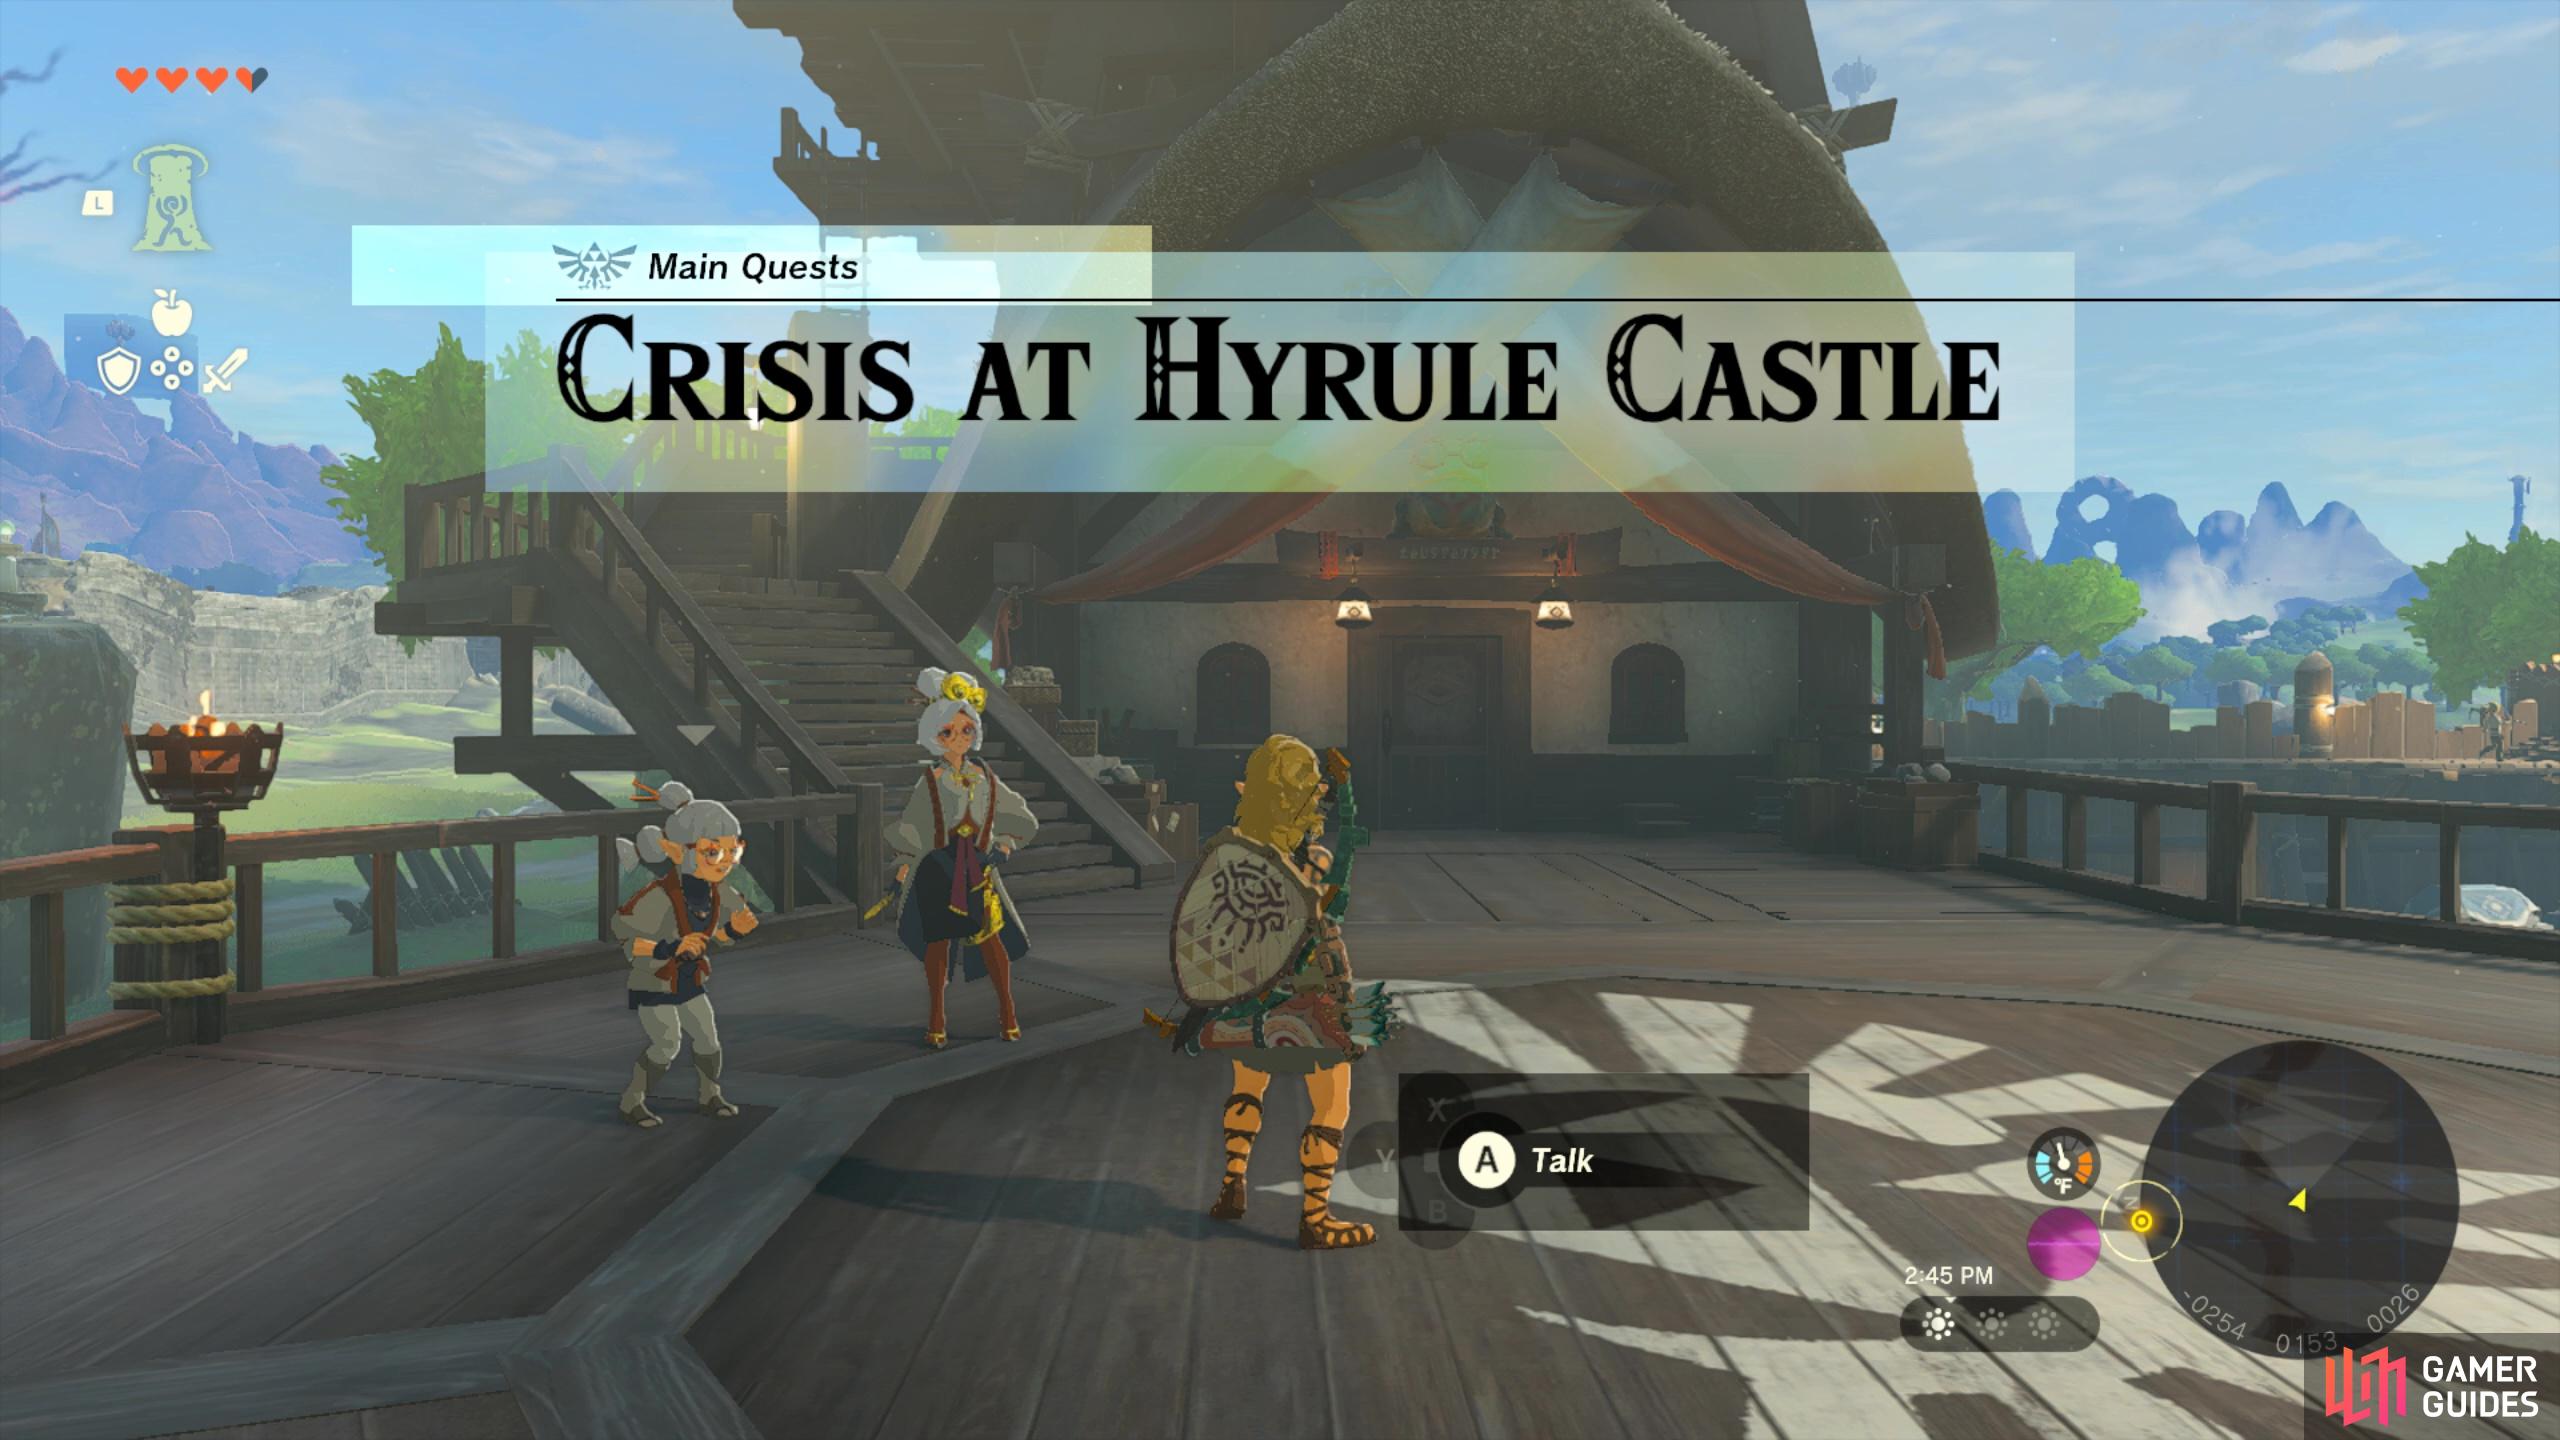 Main Quest: Crisis at Hyrule Castle.